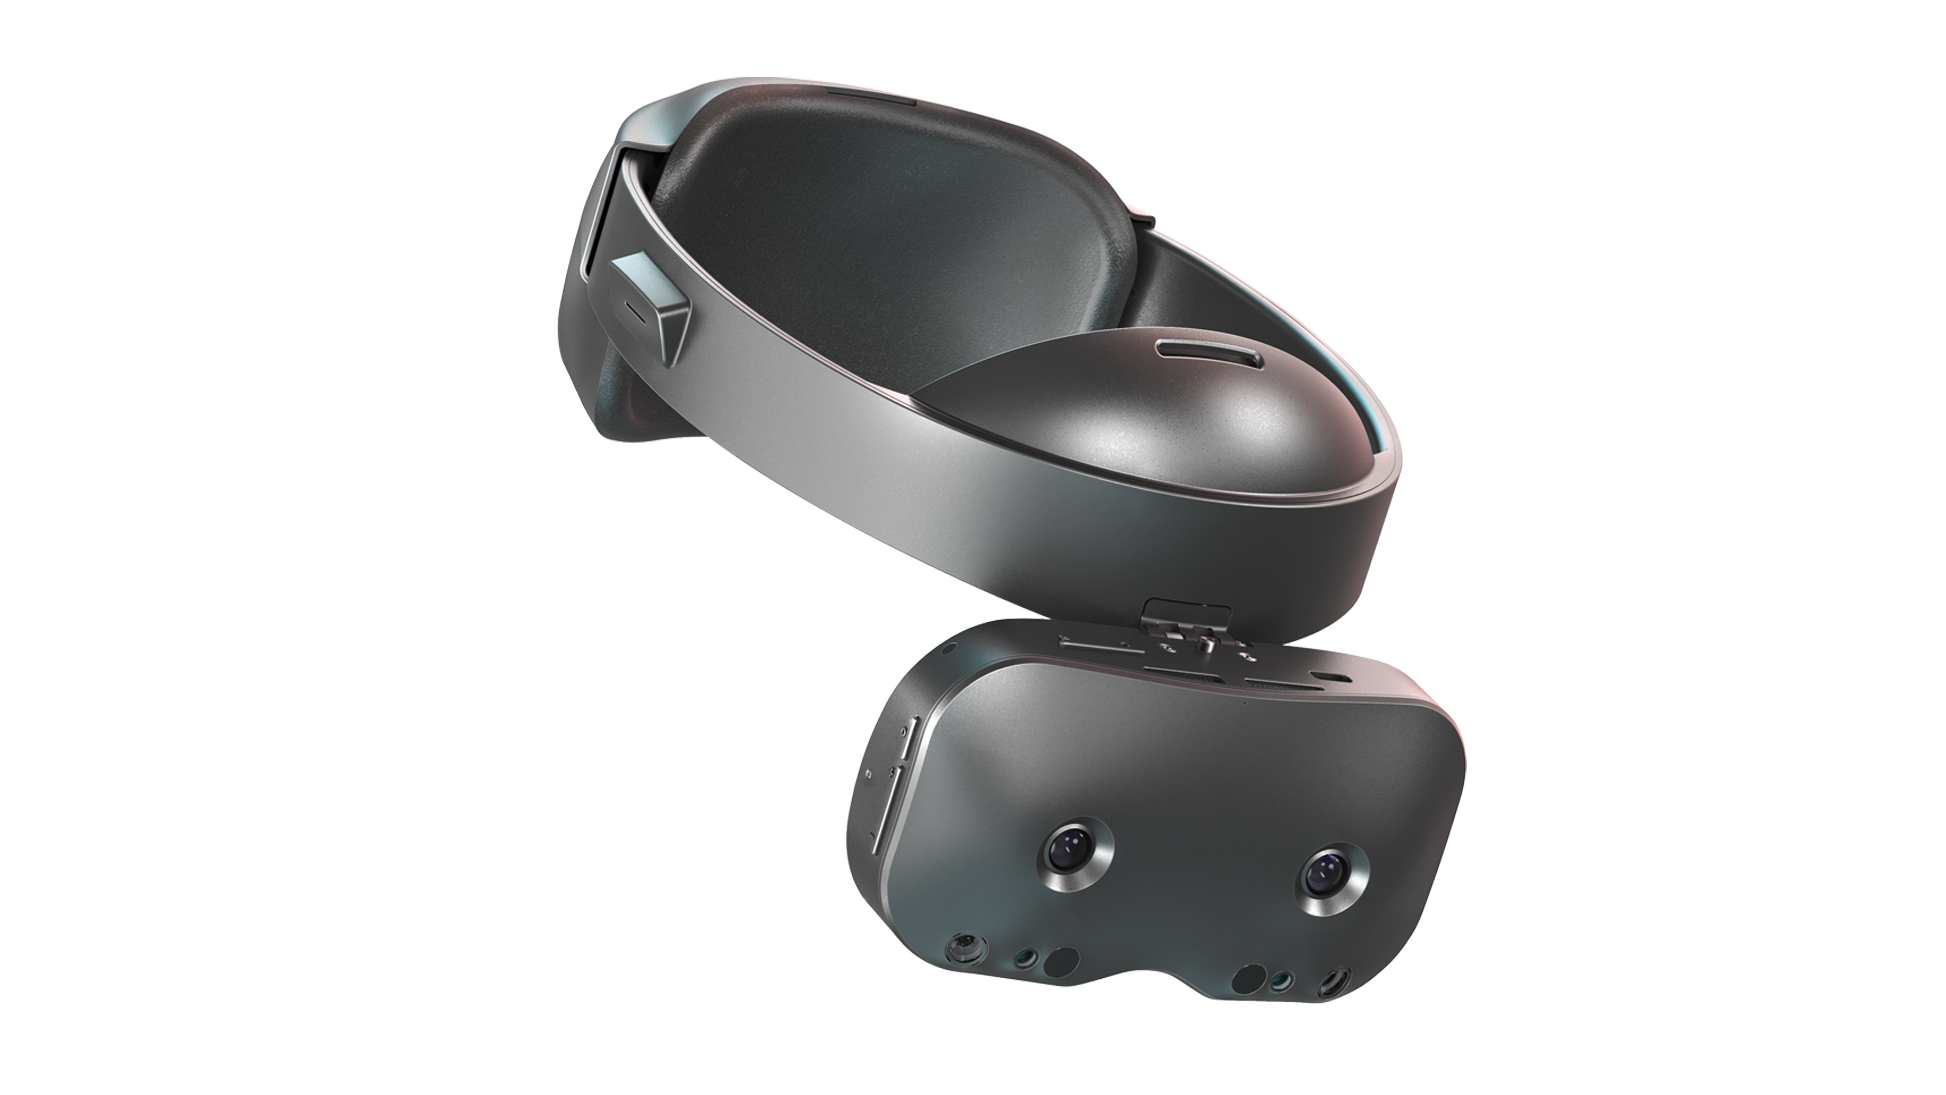 Lynx MR Headset to Start at $500 via Kickstarter in Late September